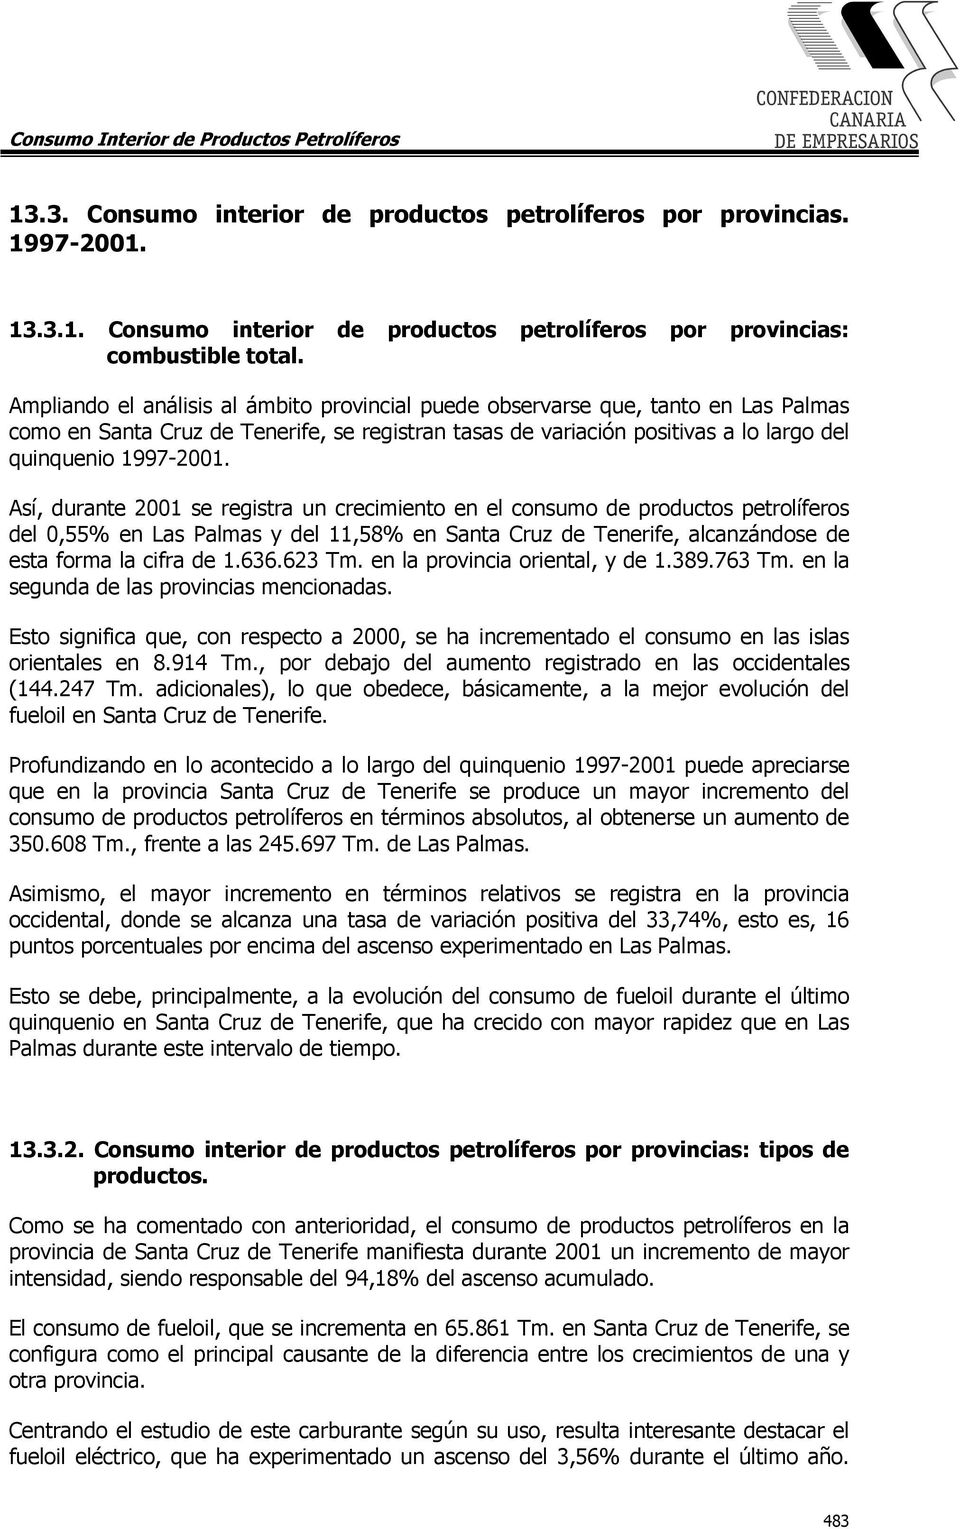 Así, durante 2001 se registra un crecimiento en el consumo de productos petrolíferos del 0,55% en Las Palmas y del 11,58% en Santa Cruz de Tenerife, alcanzándose de esta forma la cifra de 1.636.